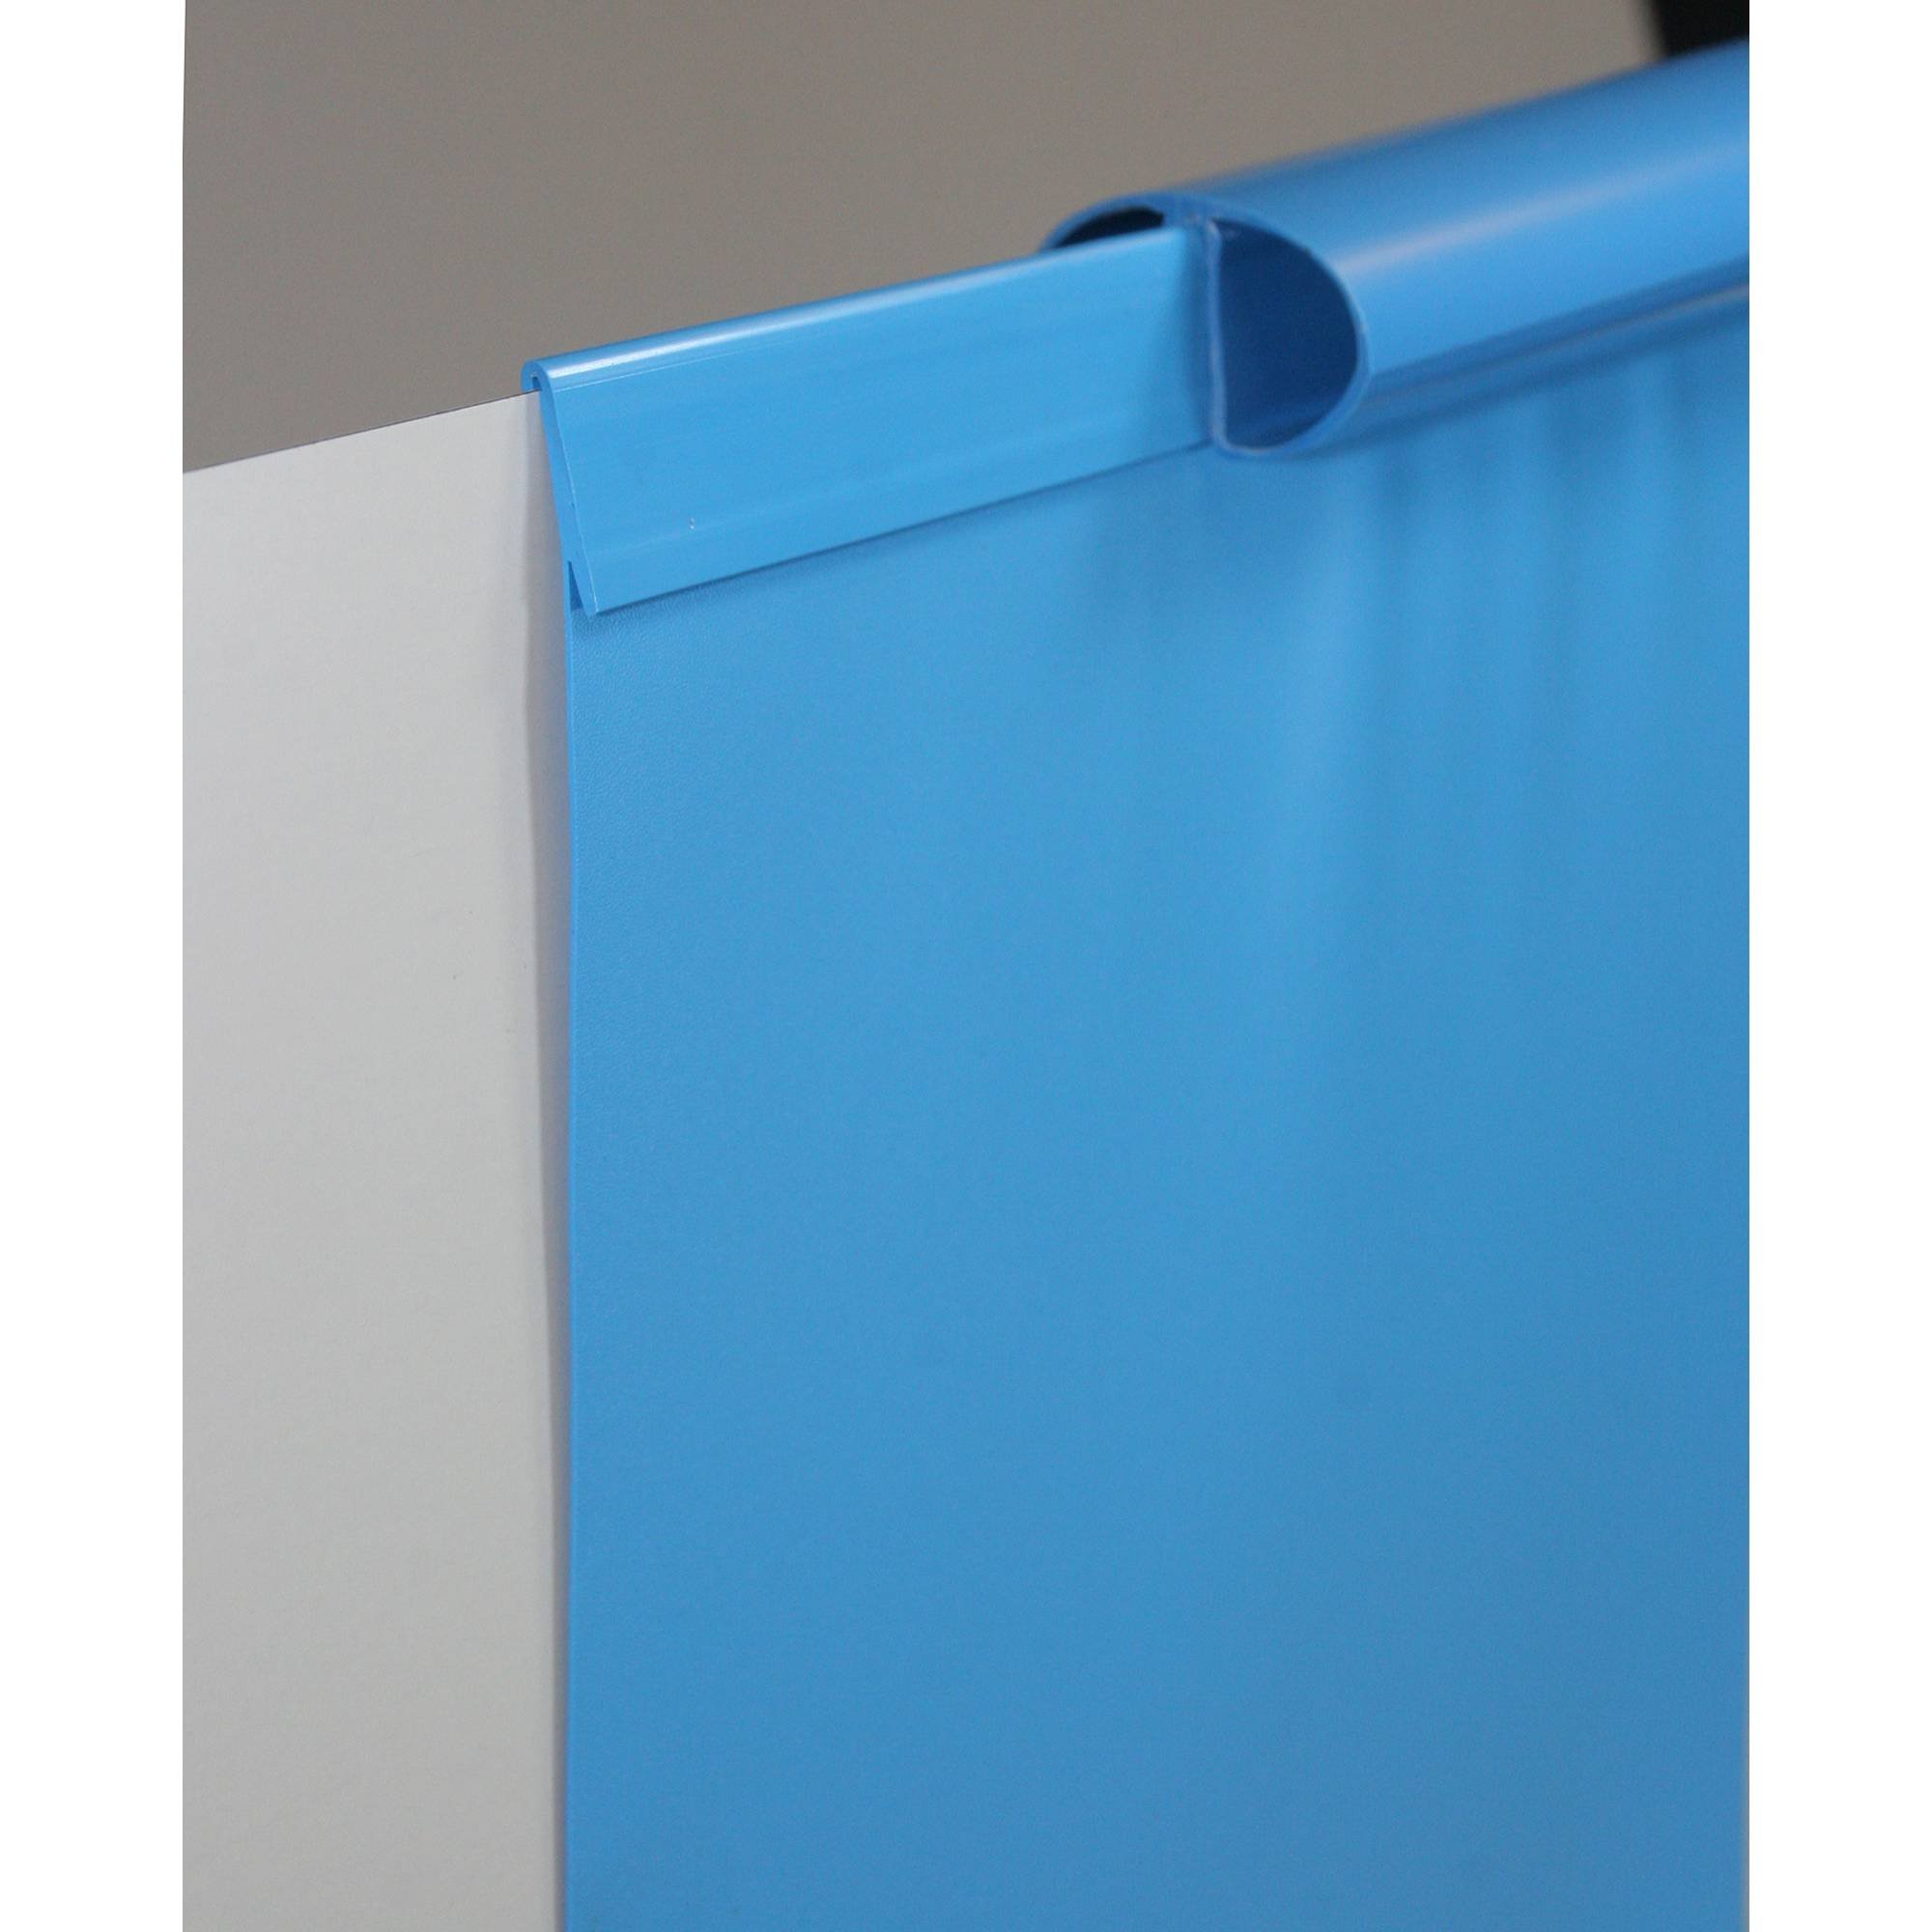 Poolfolie Ersatzfolie Rundbecken 450x90cm - Dicke 0,4mm - Einhängebiese - blau